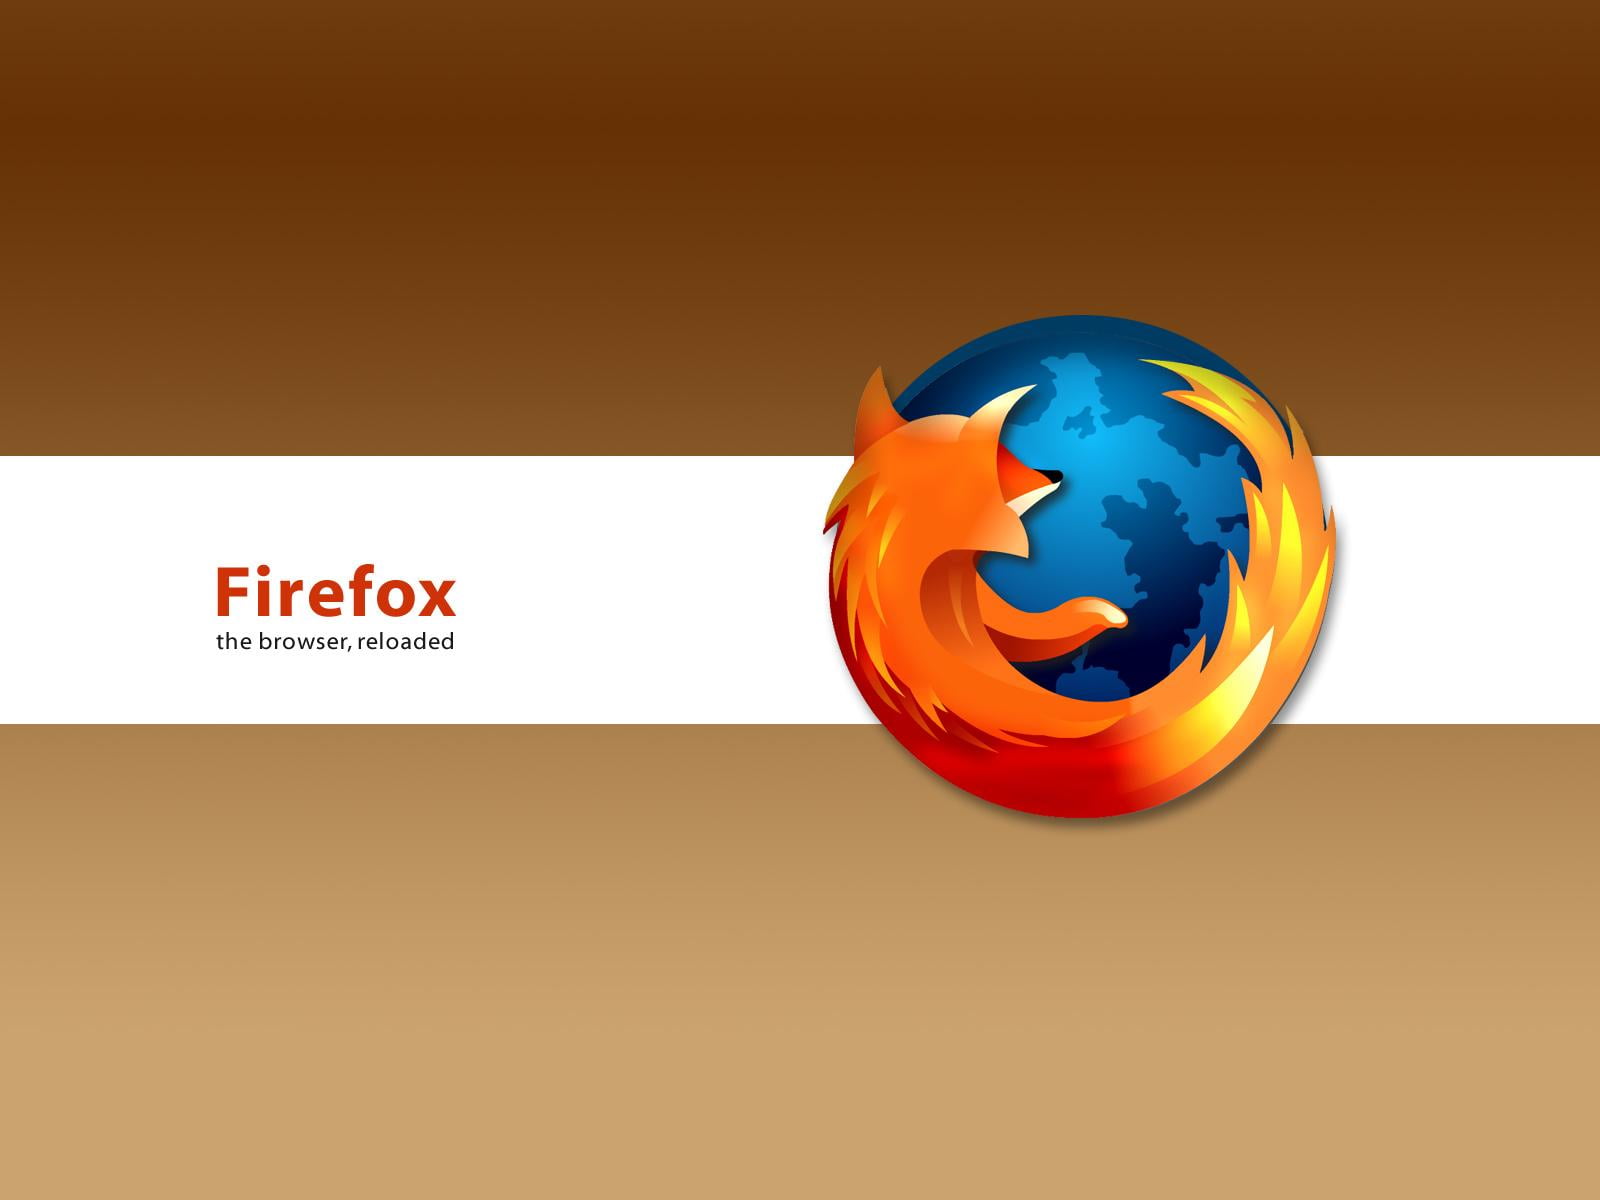 Brown Mozilla Firefox, Mozilla Firefox logo, Computers, communication